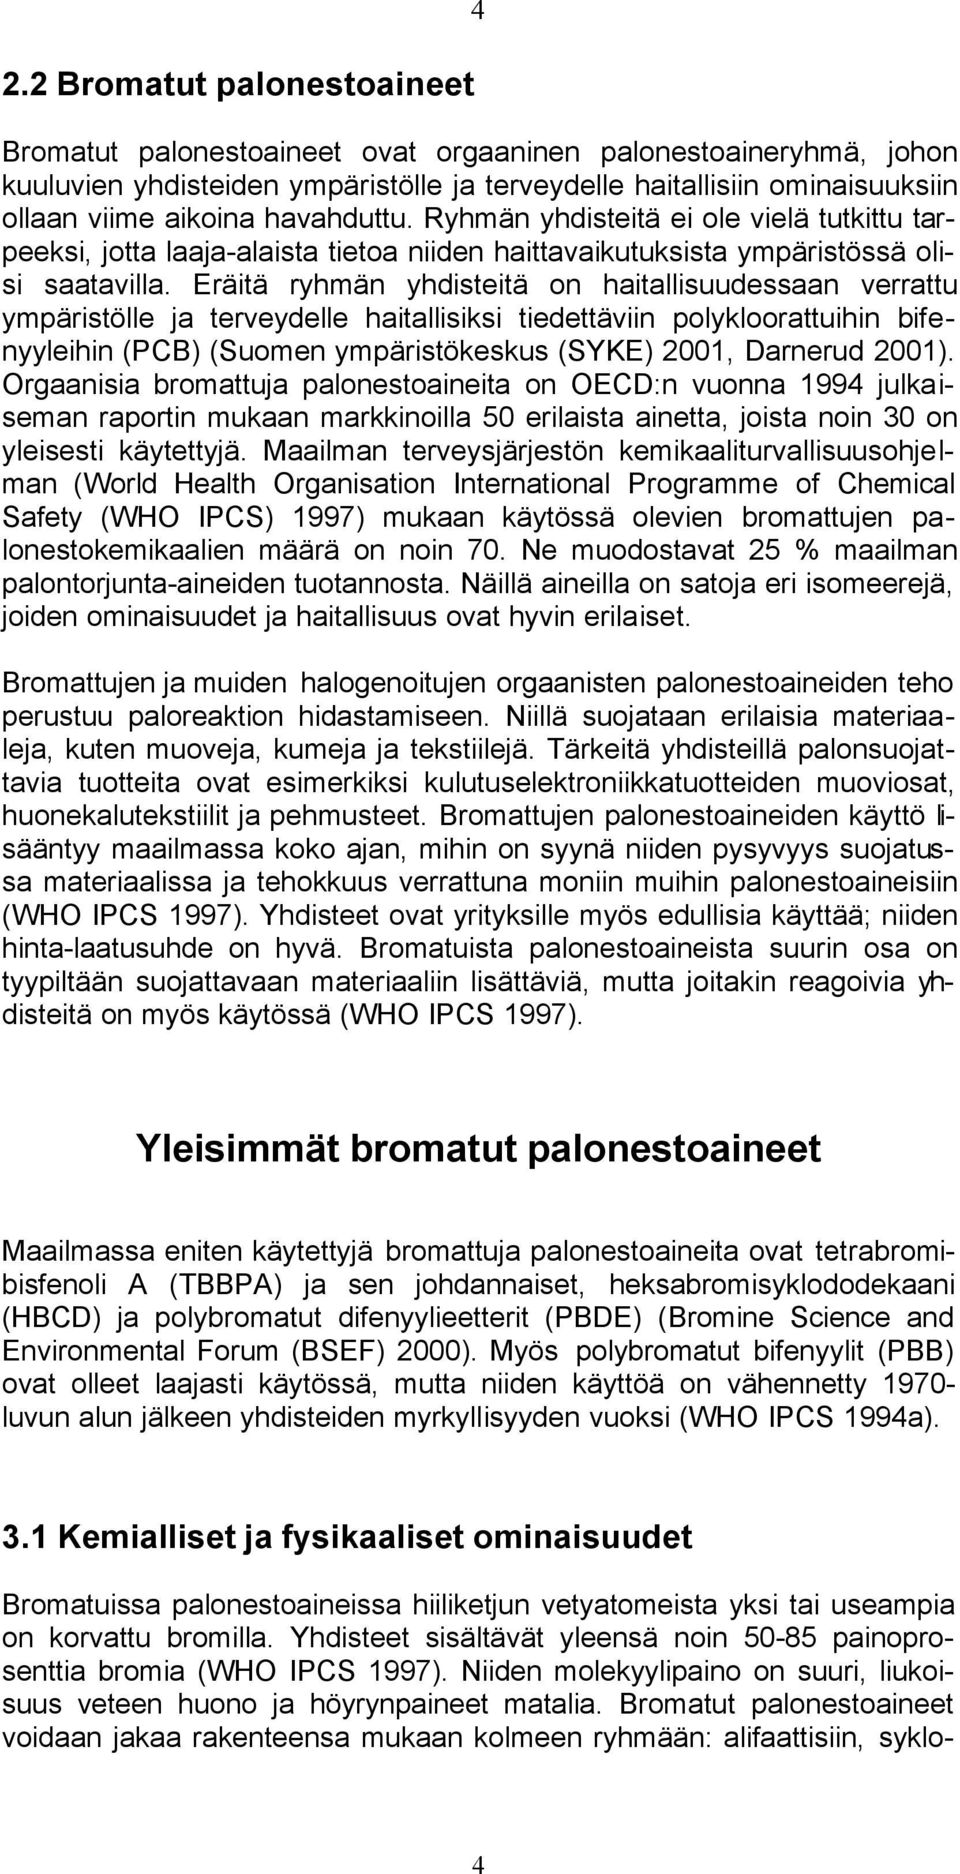 Eräitä ryhmän yhdisteitä on haitallisuudessaan verrattu ympäristölle ja terveydelle haitallisiksi tiedettäviin polykloorattuihin bifenyyleihin (PCB) (Suomen ympäristökeskus (SYKE) 2001, Darnerud